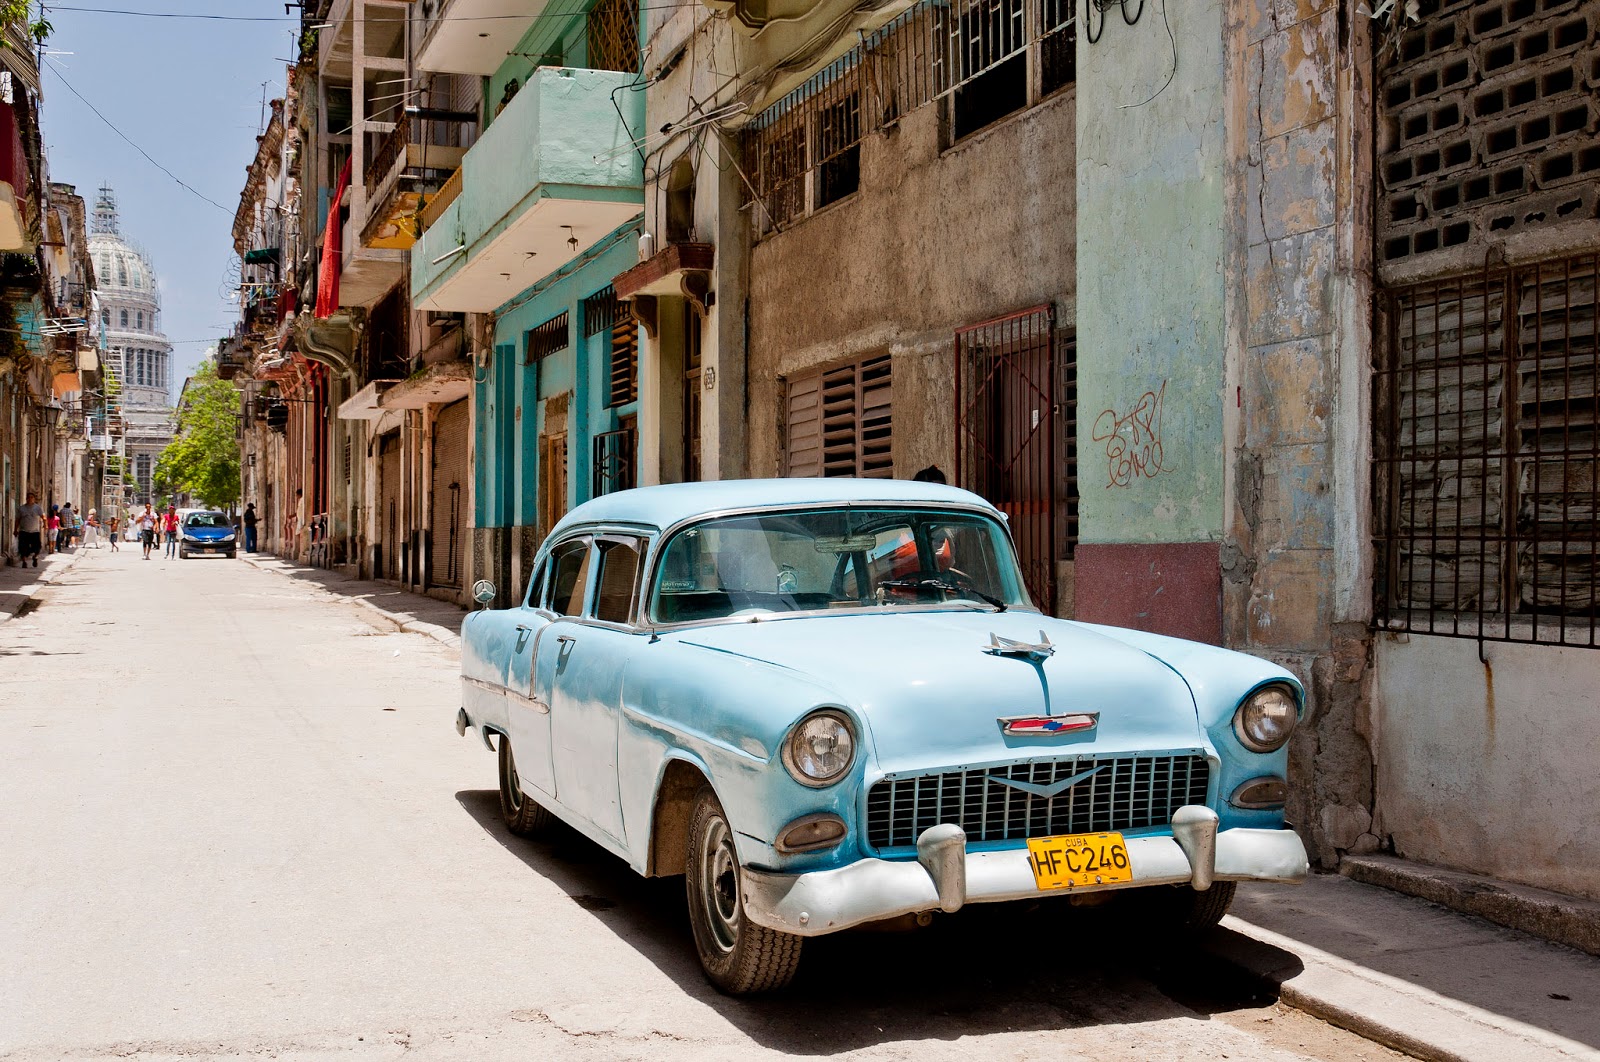 Havana Taxi: Grand Taxi - Classic Taxi